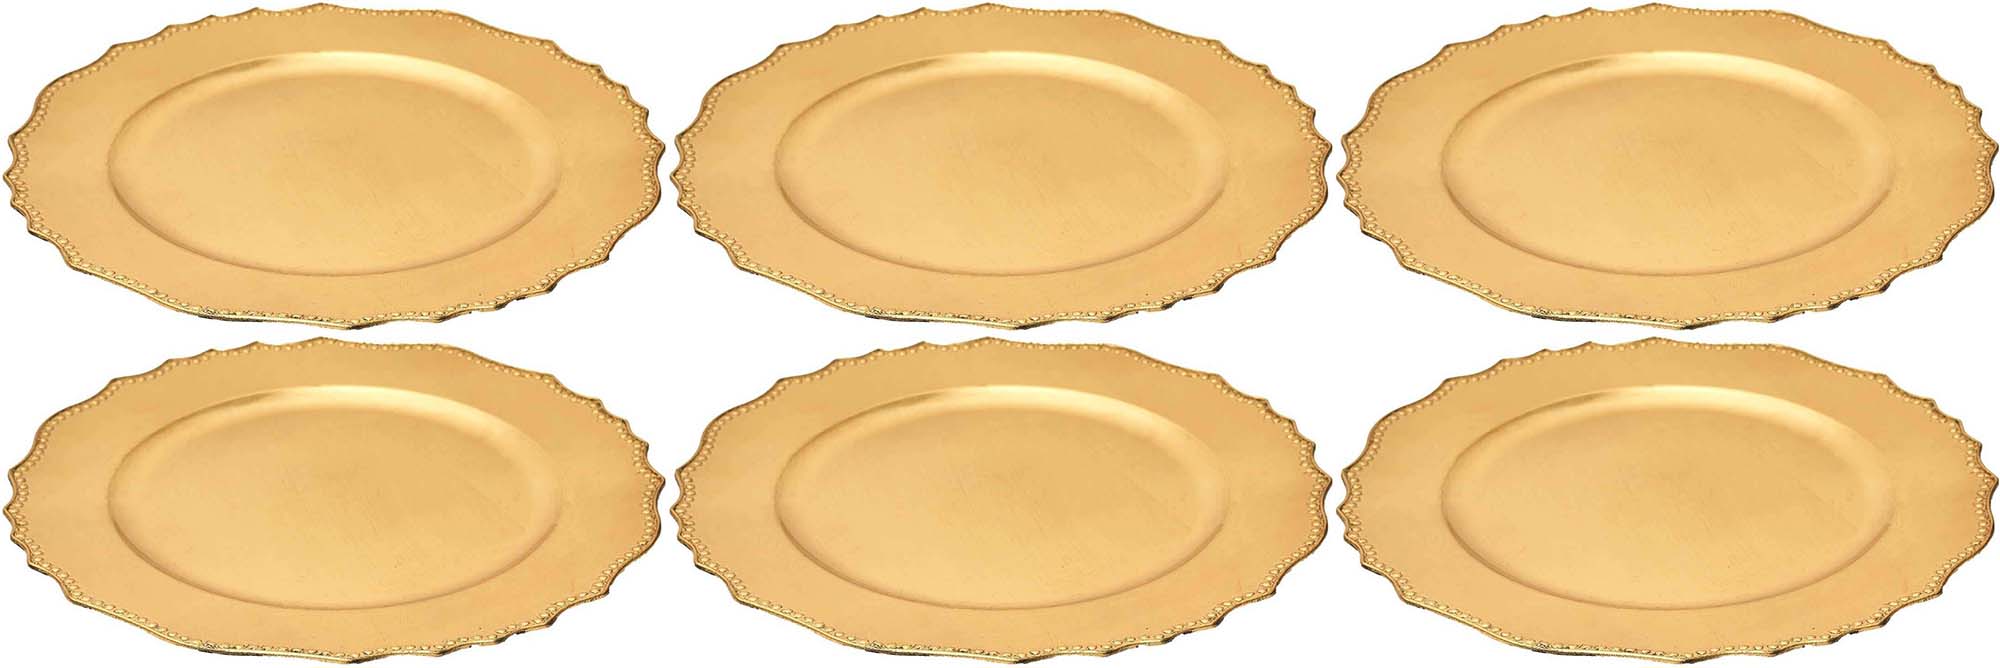 Dessous d'assiette en plastique doré royal (lot de 6) - Conforama